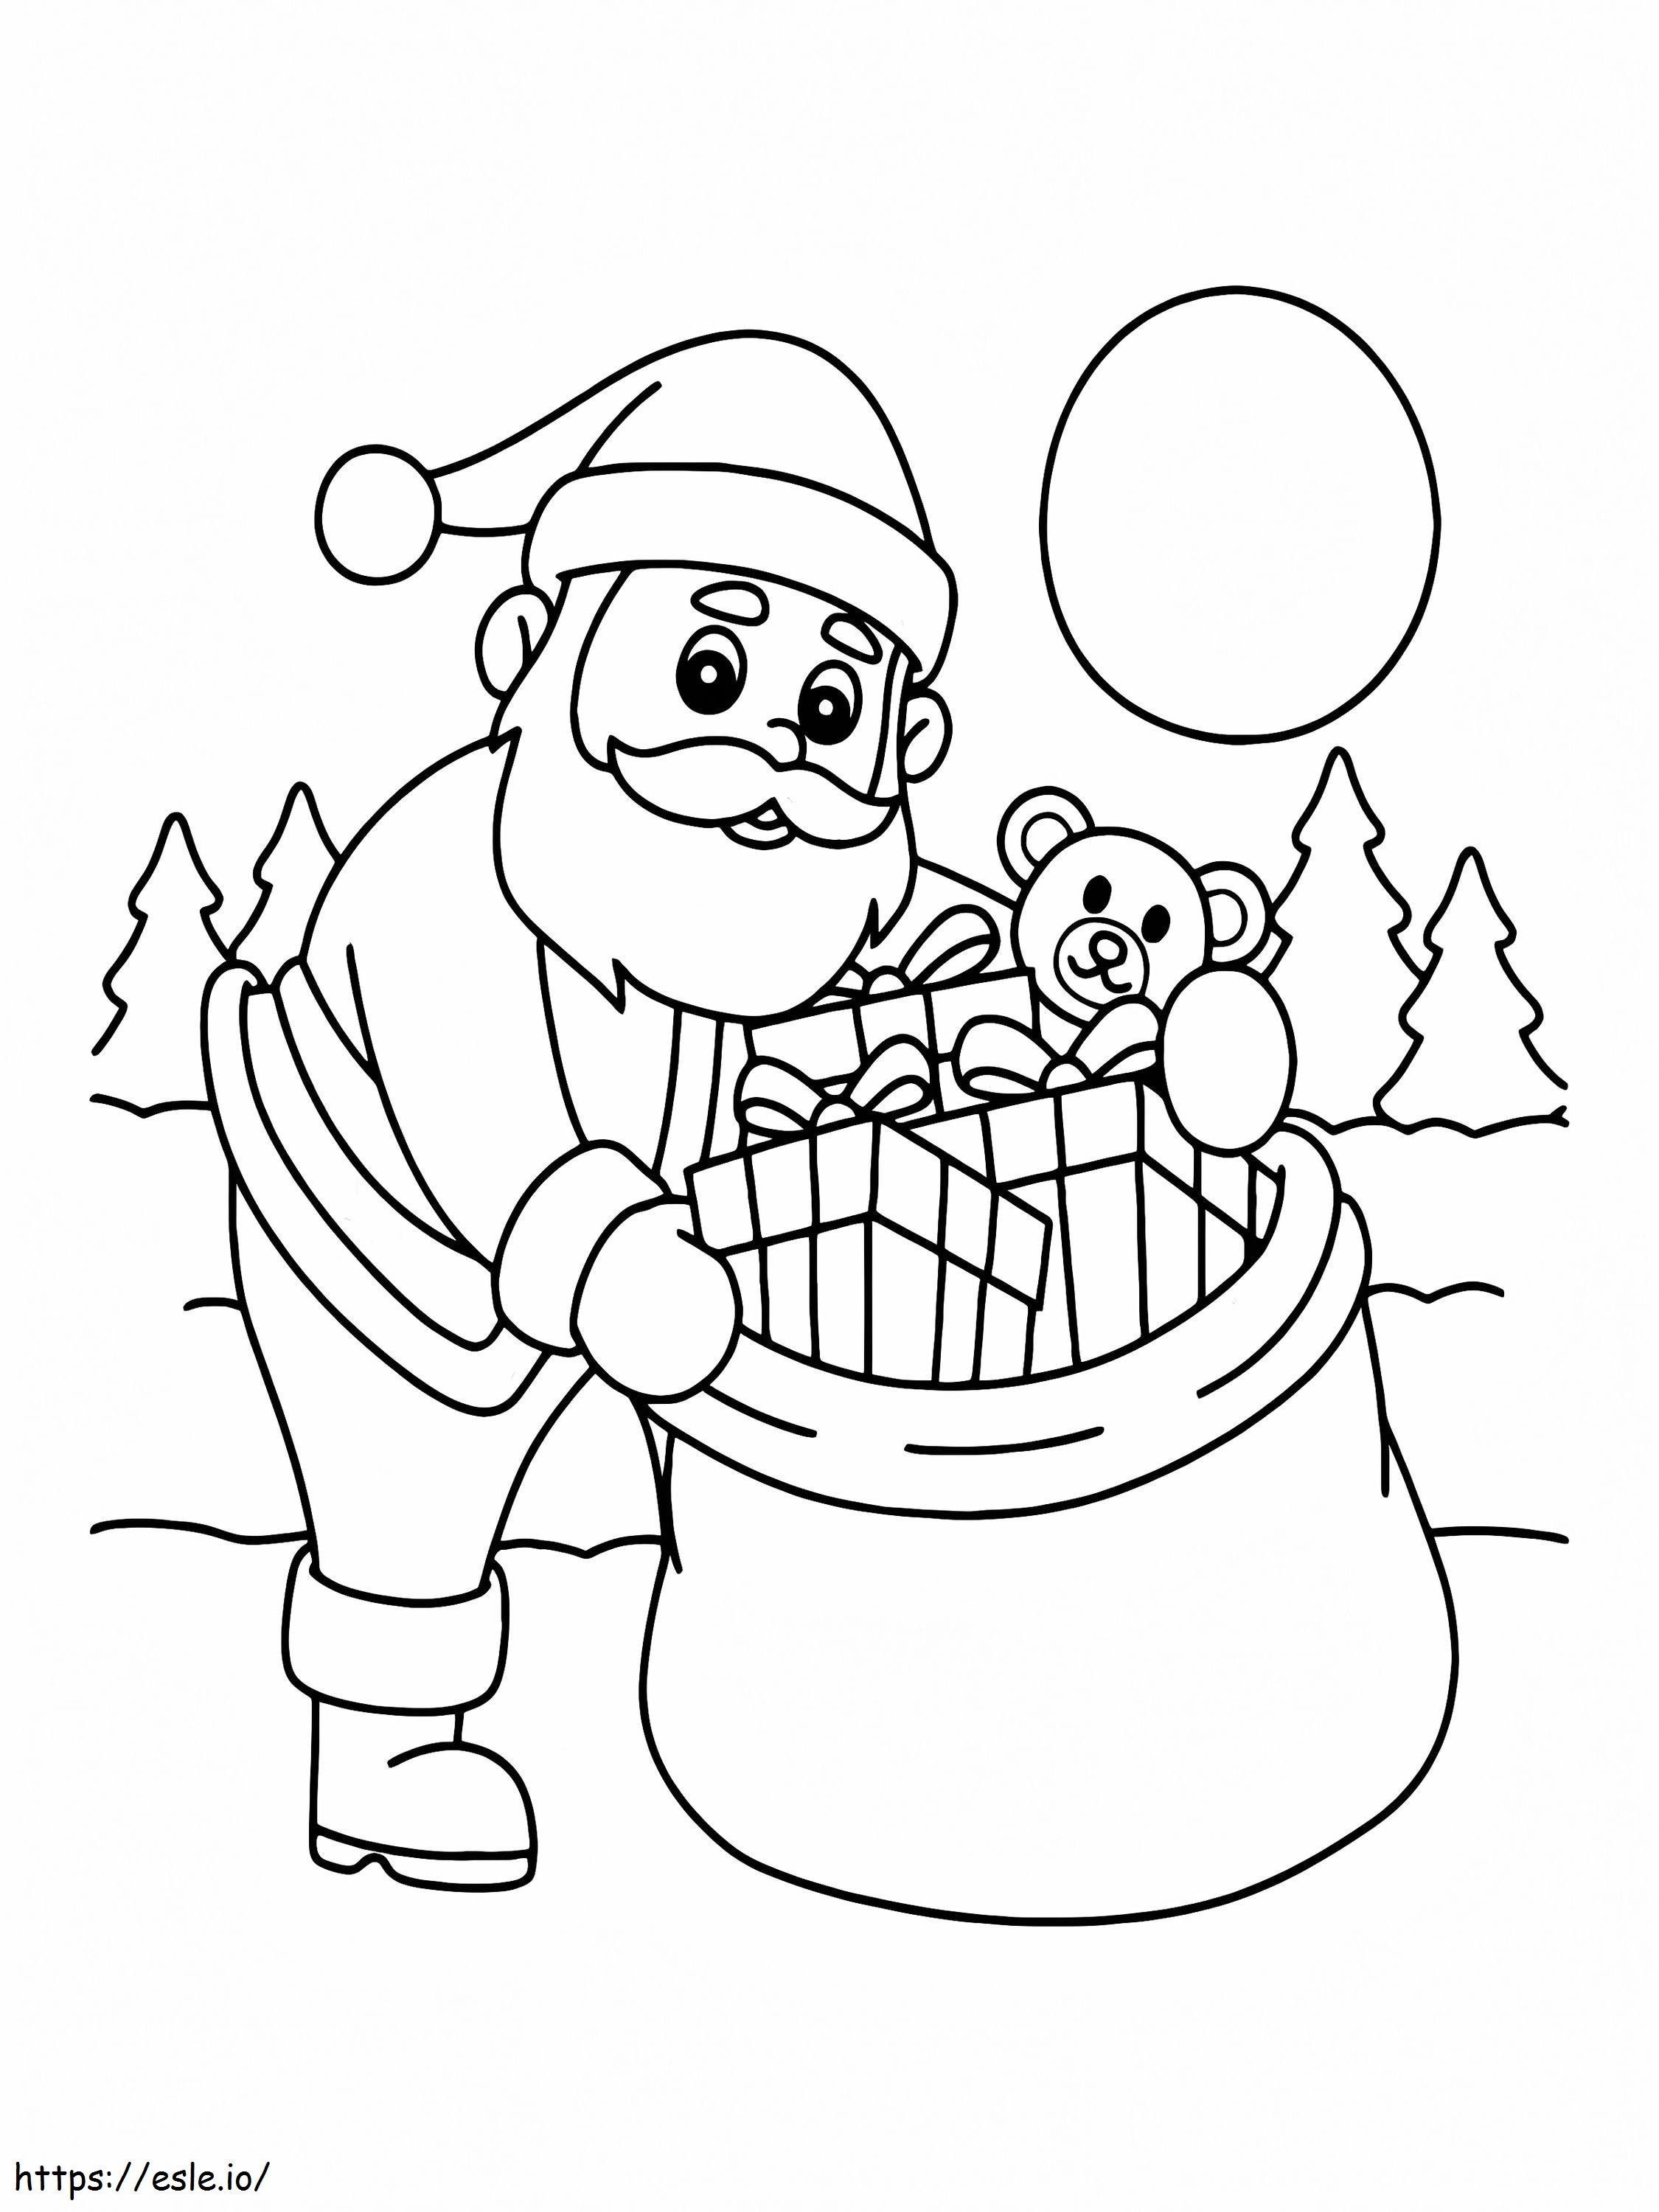 Coloriage Père Noël, préparation, cadeau à imprimer dessin